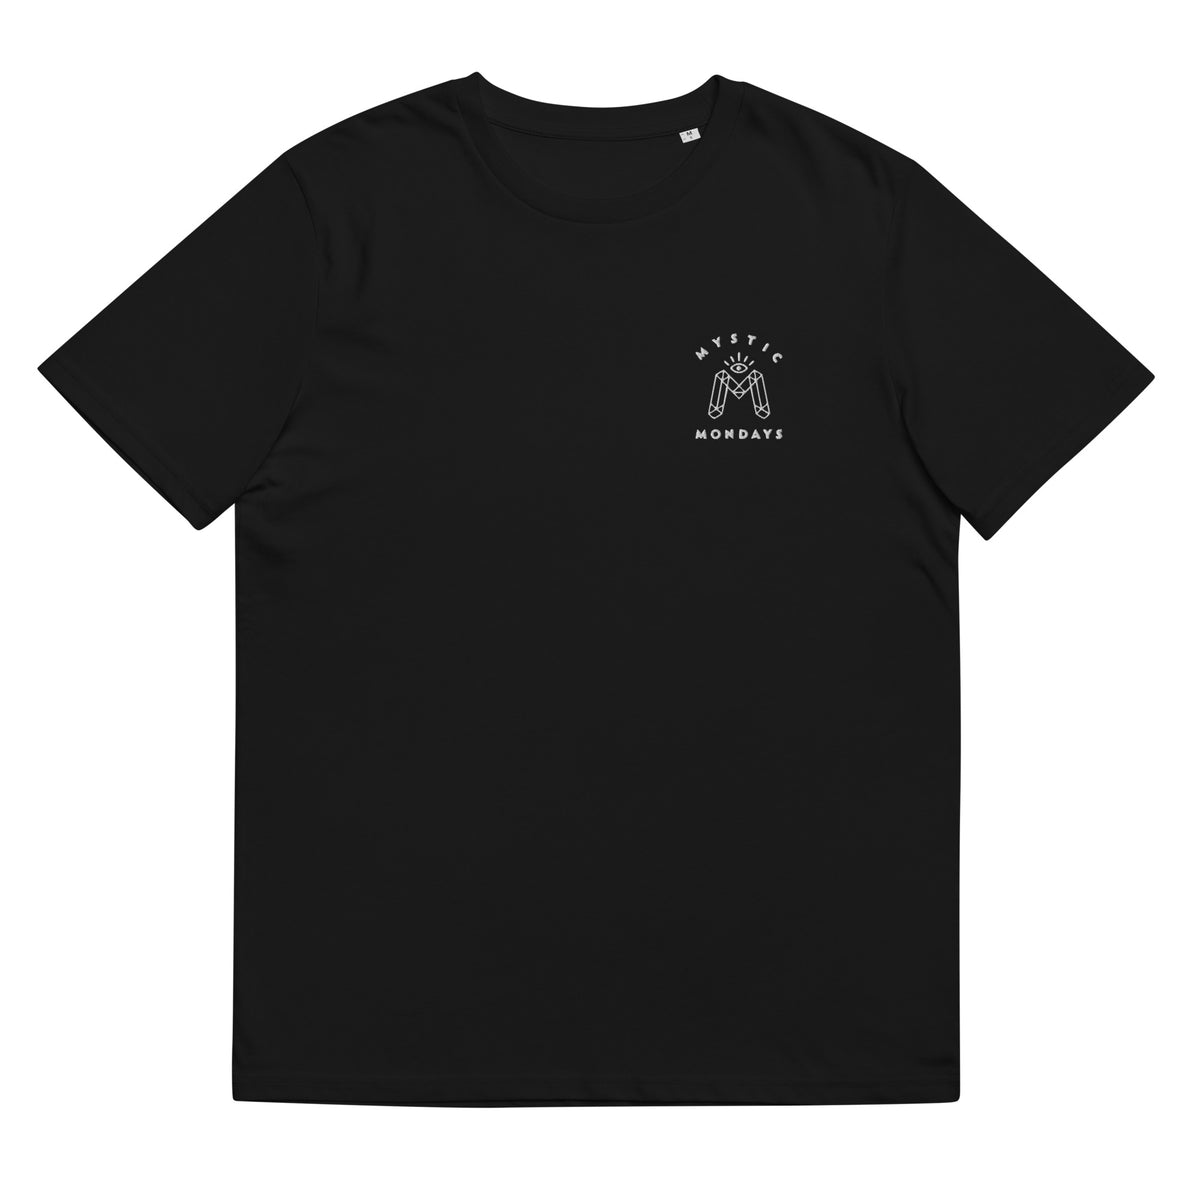 Pisces Zodiac T-shirt